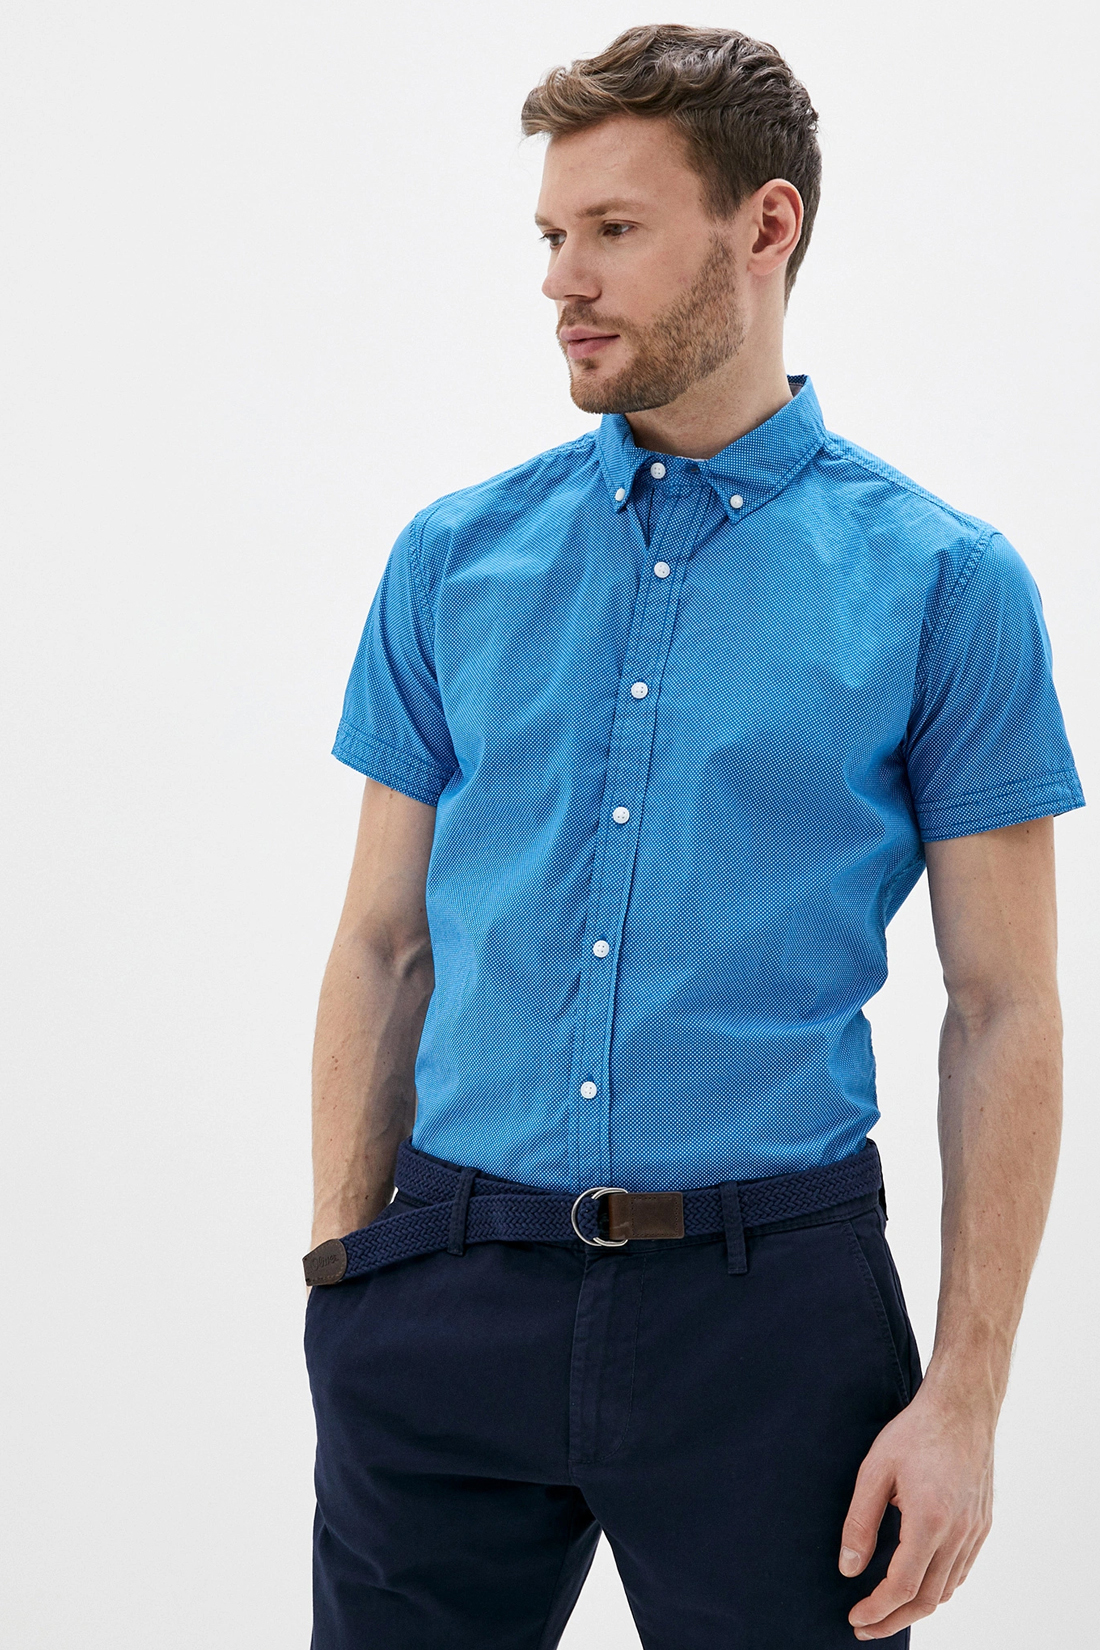 Рубашка в точку с коротким рукавом (арт. baon B680019), размер XL, цвет синий Рубашка в точку с коротким рукавом (арт. baon B680019) - фото 1